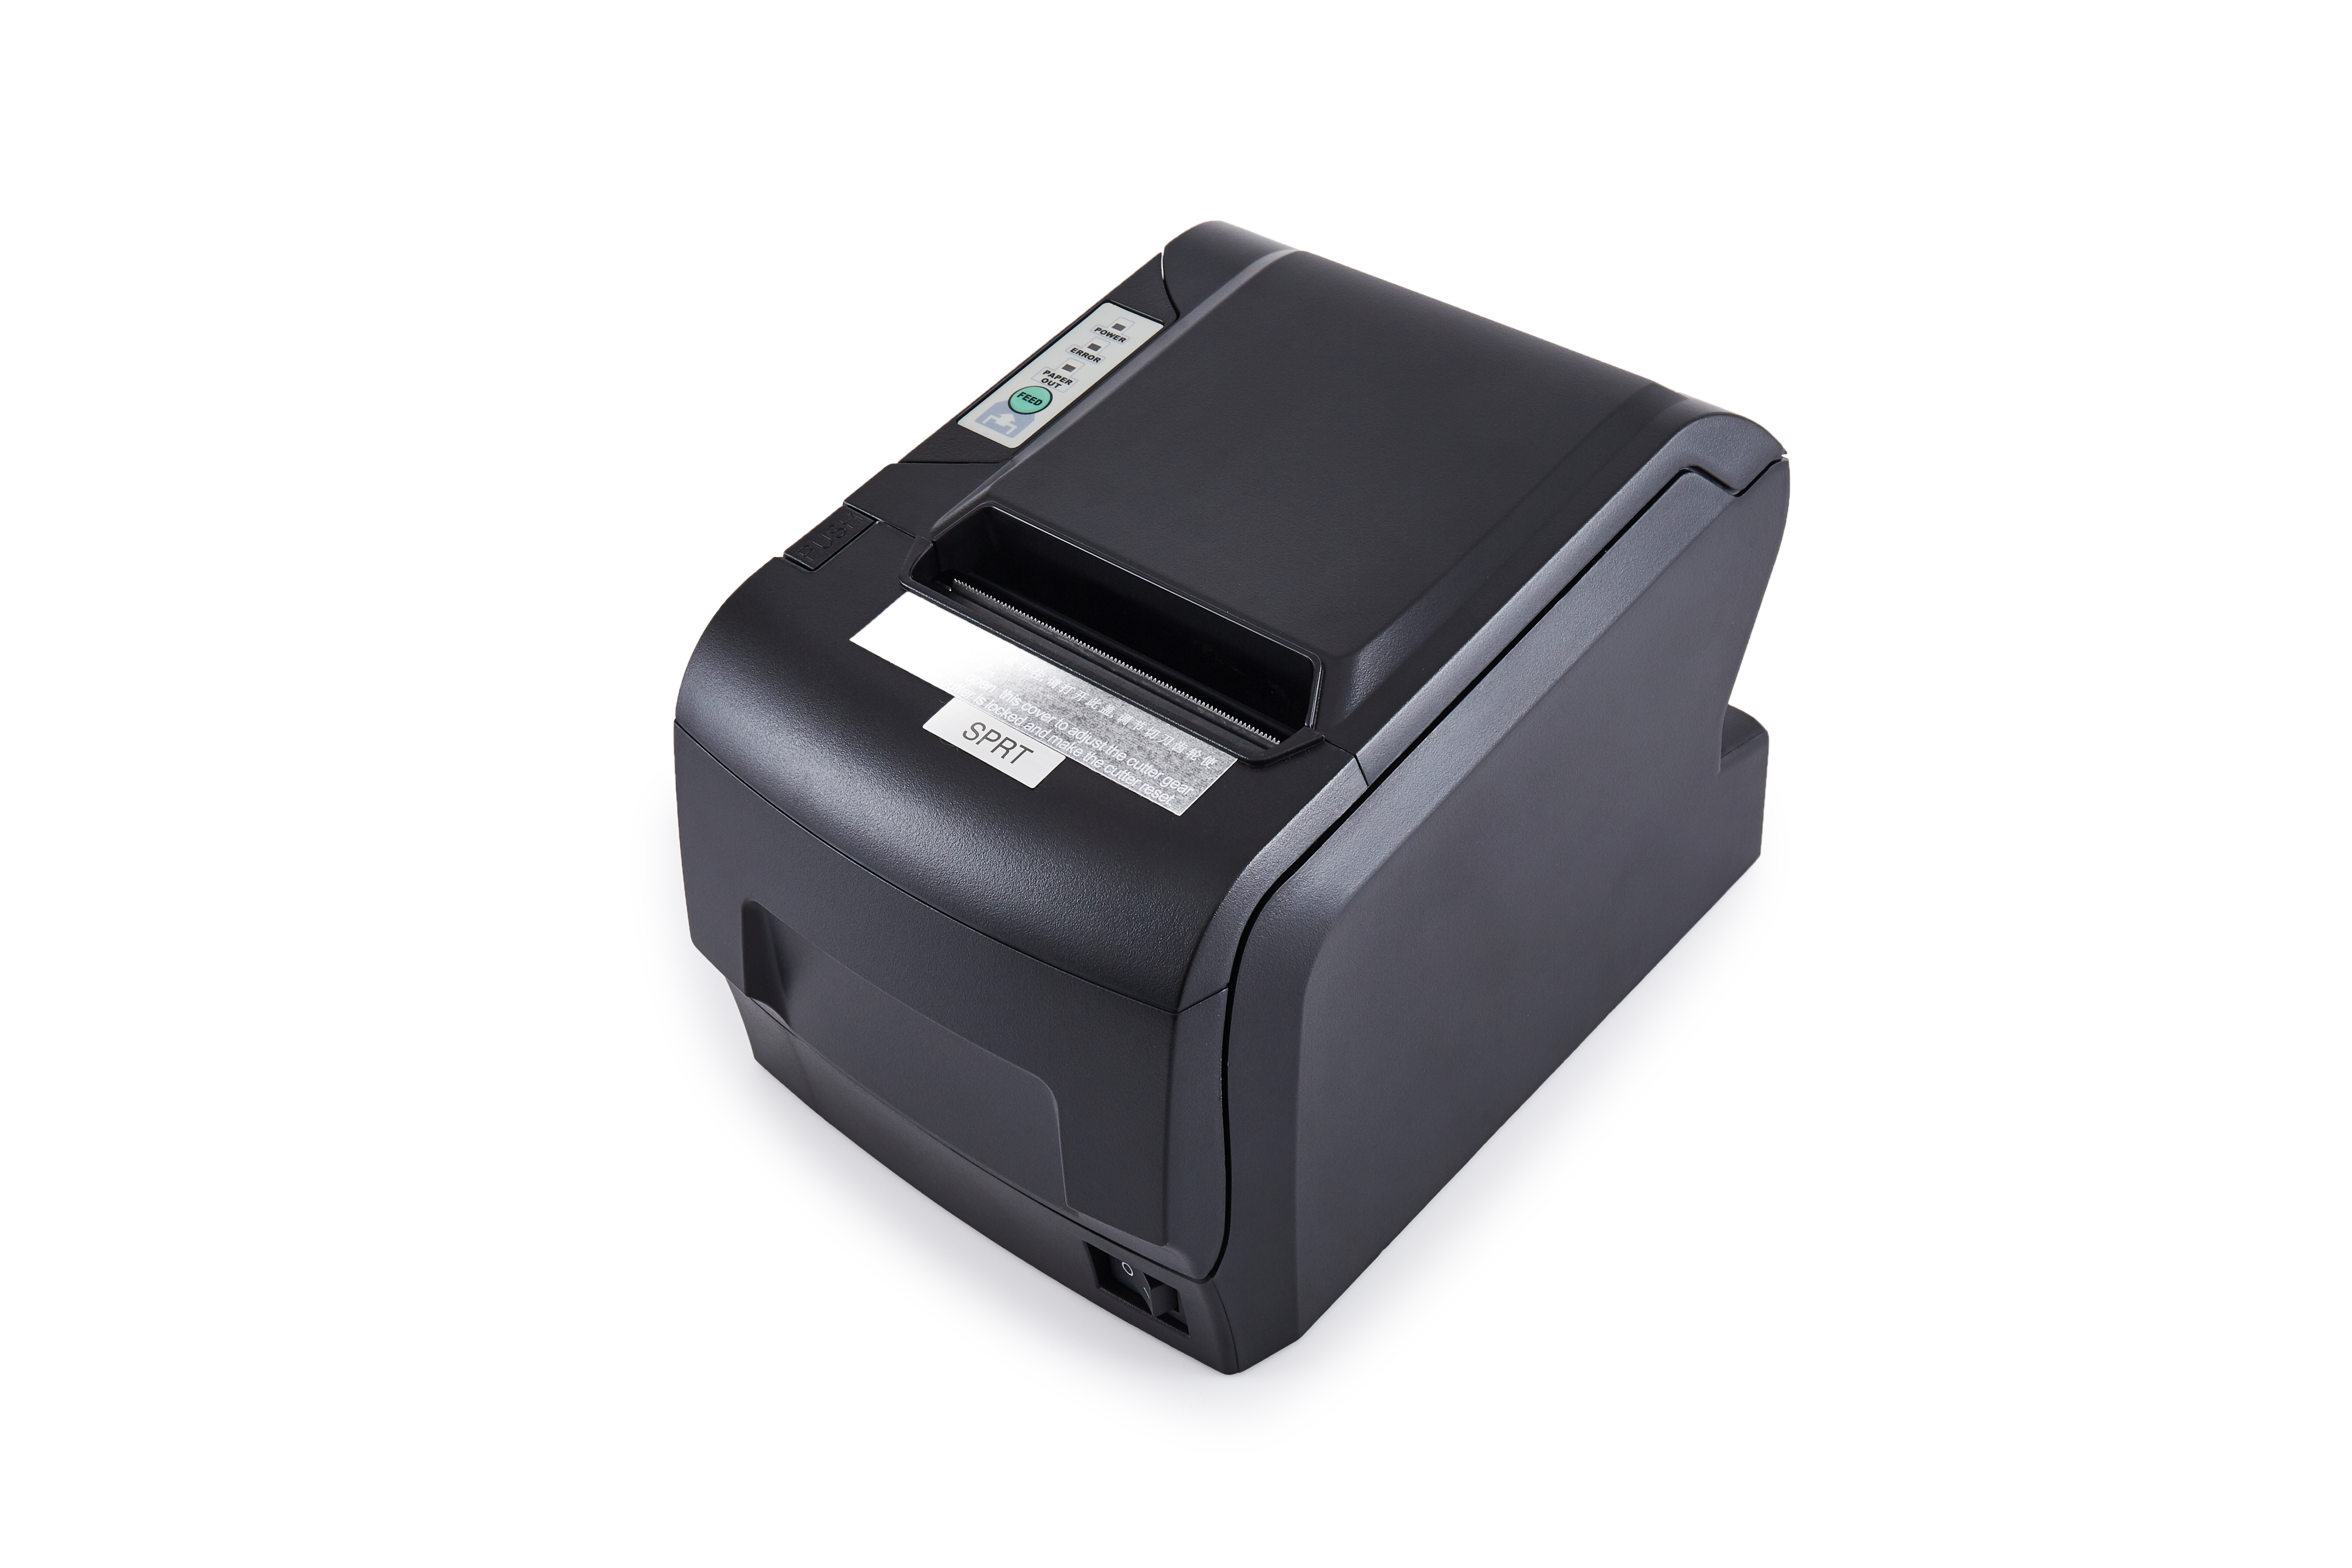 Ce tip de imprimantă este folosită cu sistemul POS?